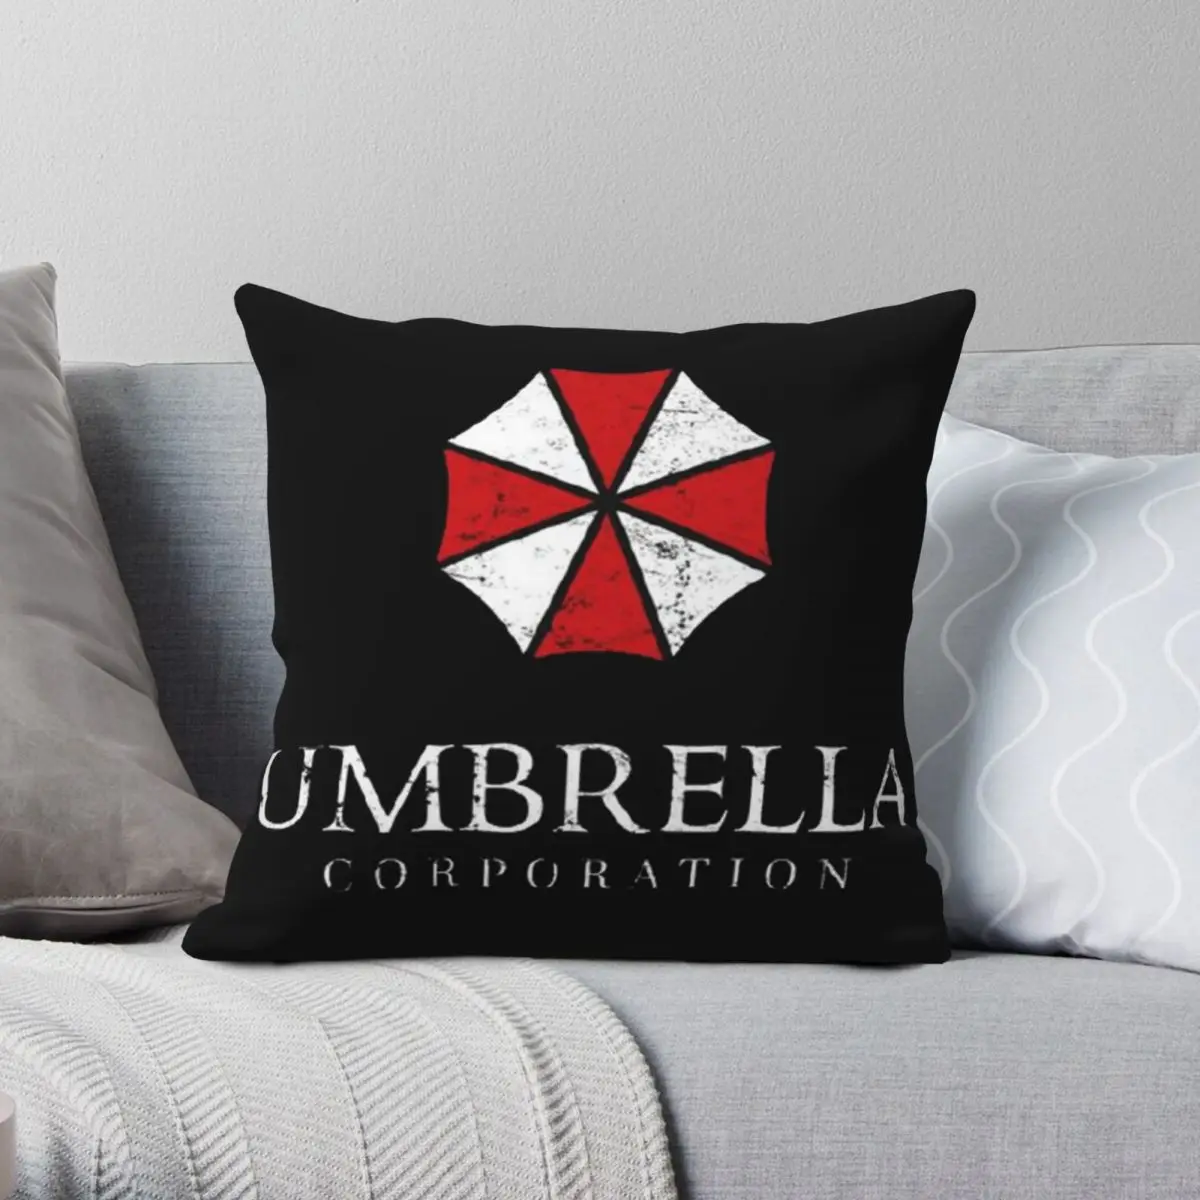 

Umbrella Corporation Square Pillowcase Polyester Linen Velvet Creative Zip Decor Car Cushion Cover